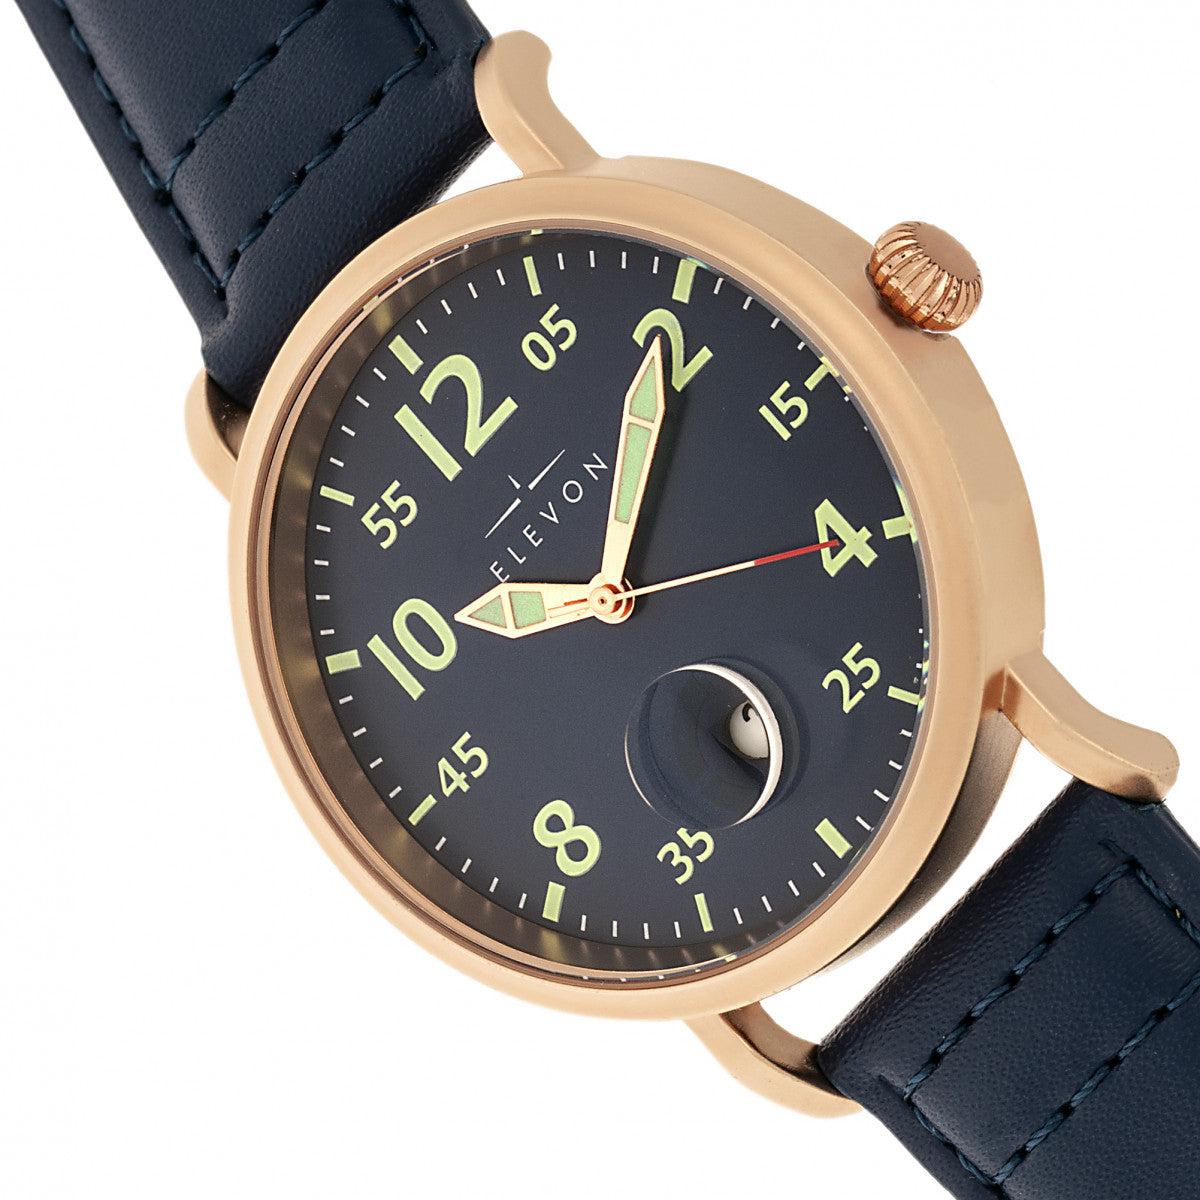 Elevon Von Braun Leather-Band Watch w/Date - Rose Gold/Blue - ELE112-3